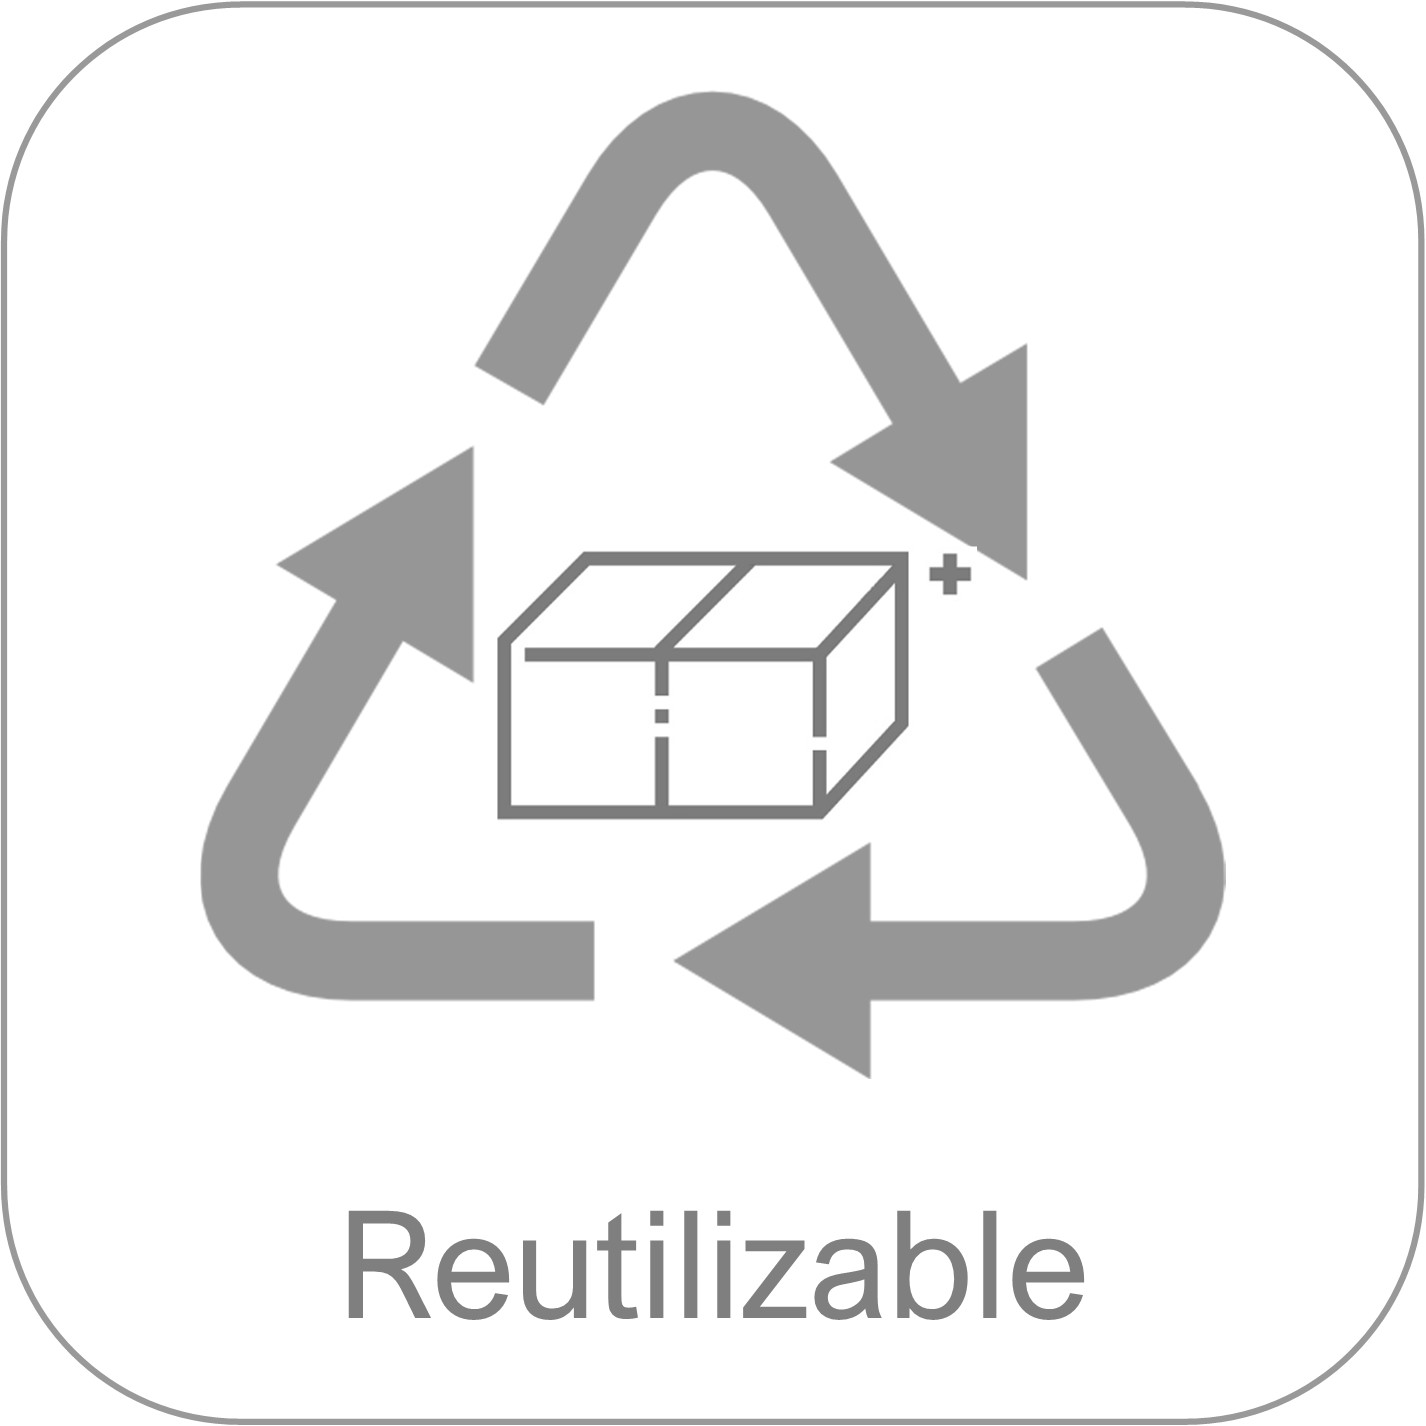 Reutilizable